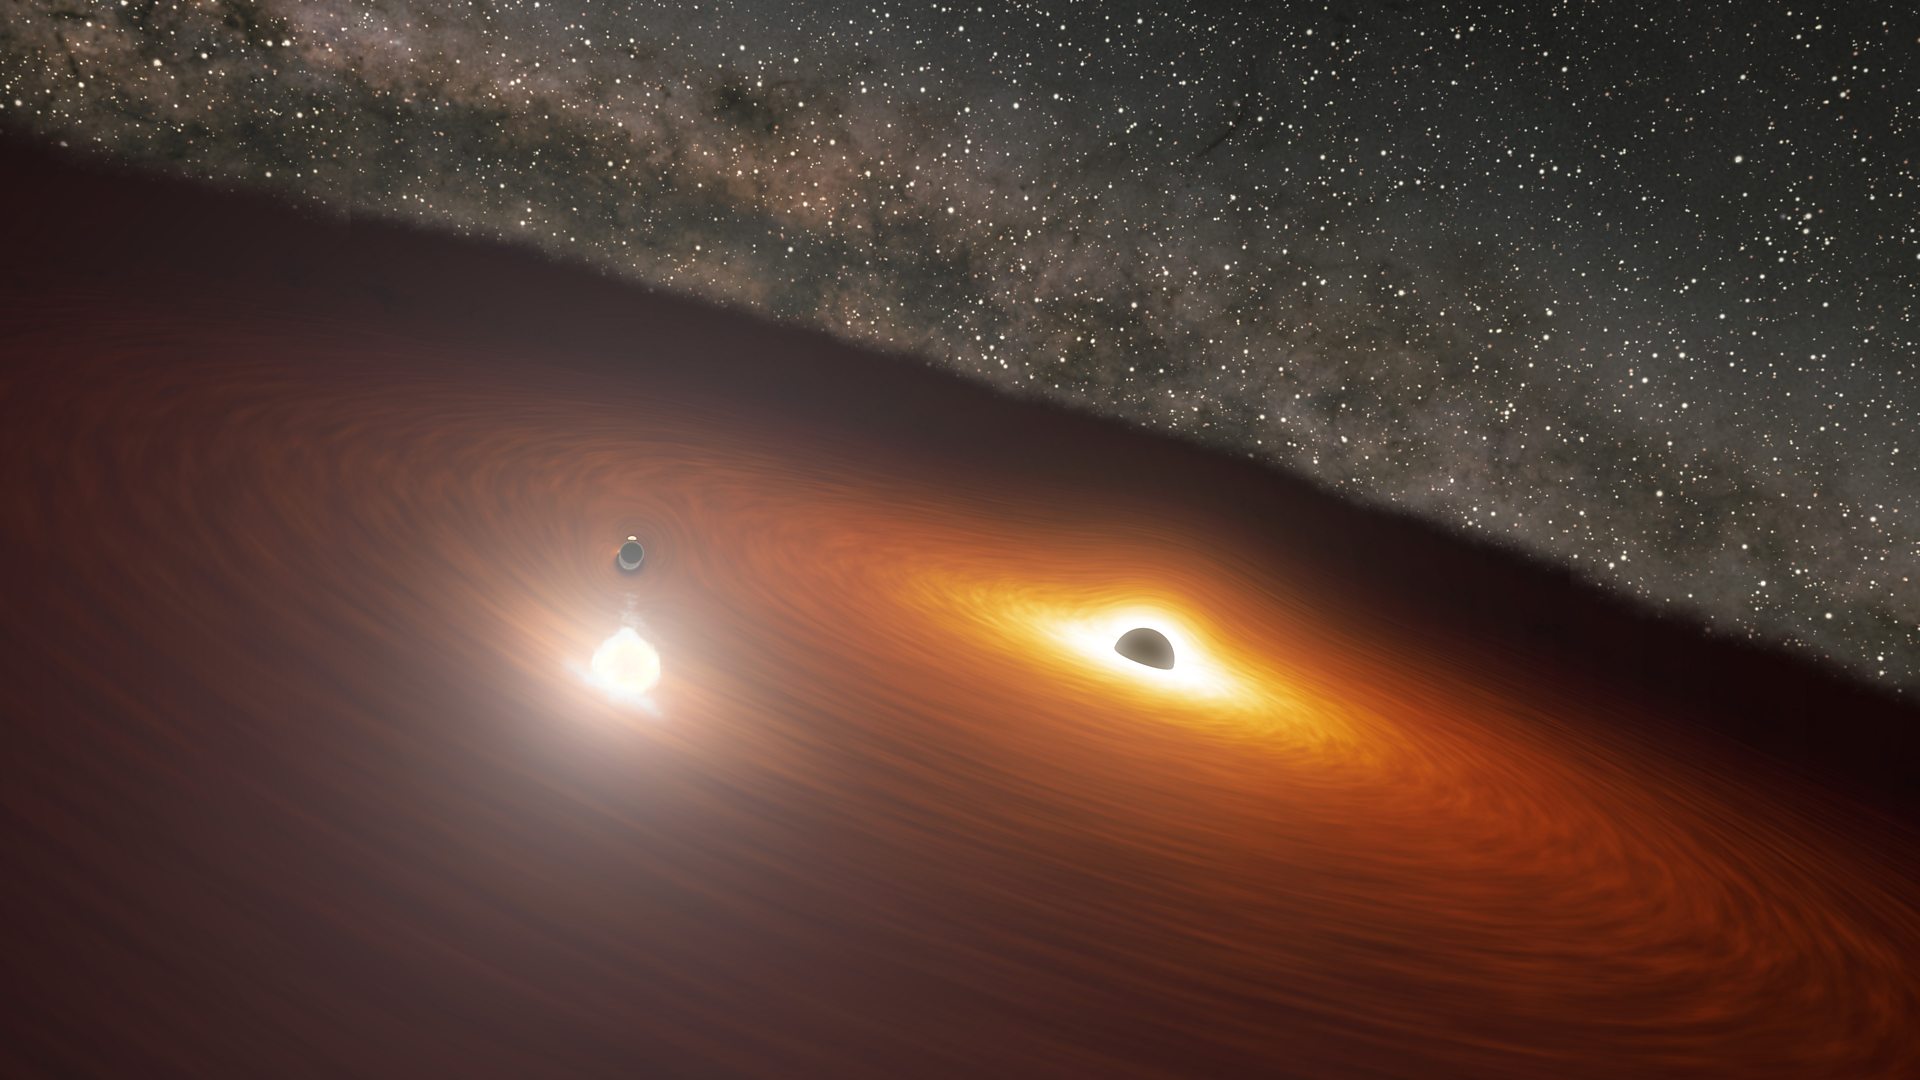 Giant black holes play to Einstein's tune